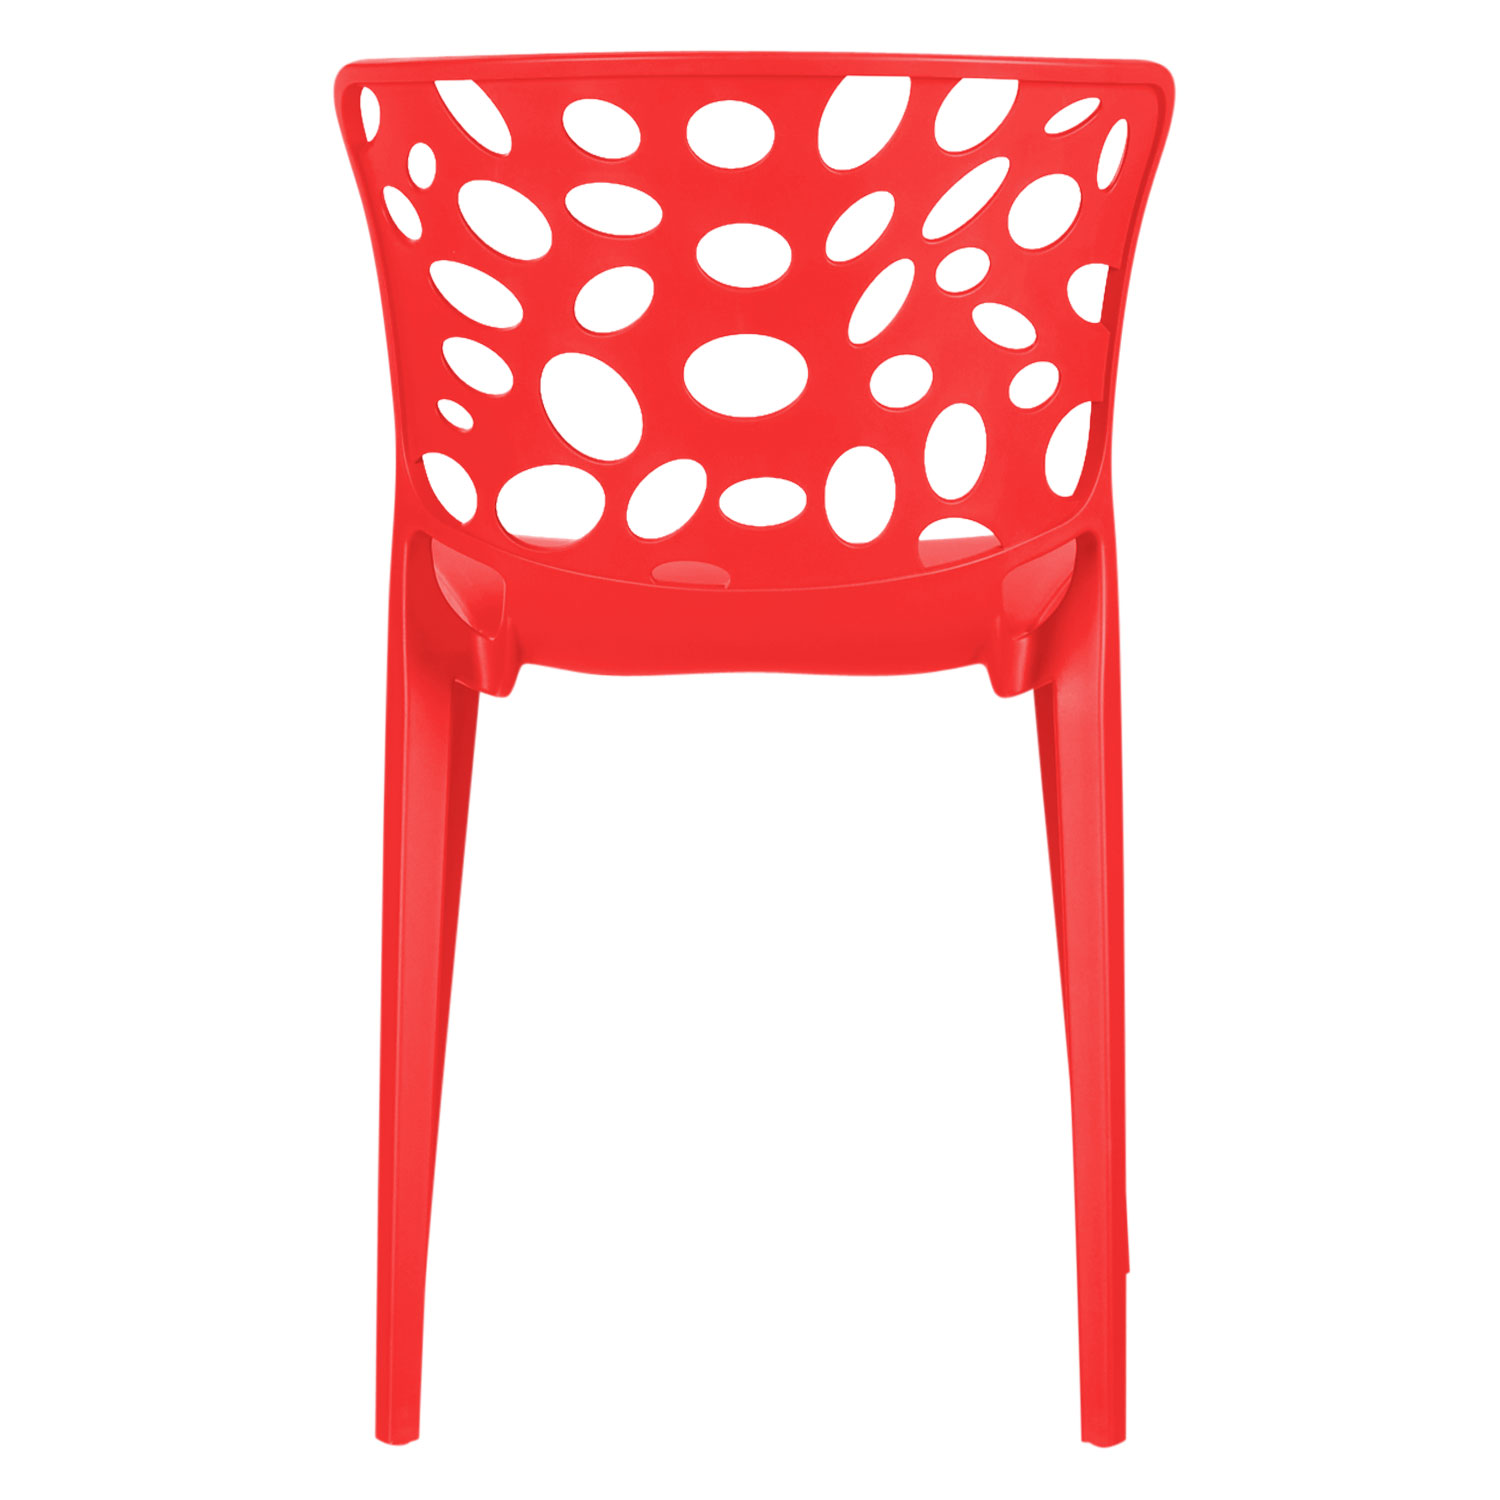 Chaise de jardin Lot de 6 Moderne Rouge Chaises design Plastique Chaises exterieur Chaises empilable Chaise de cuisine